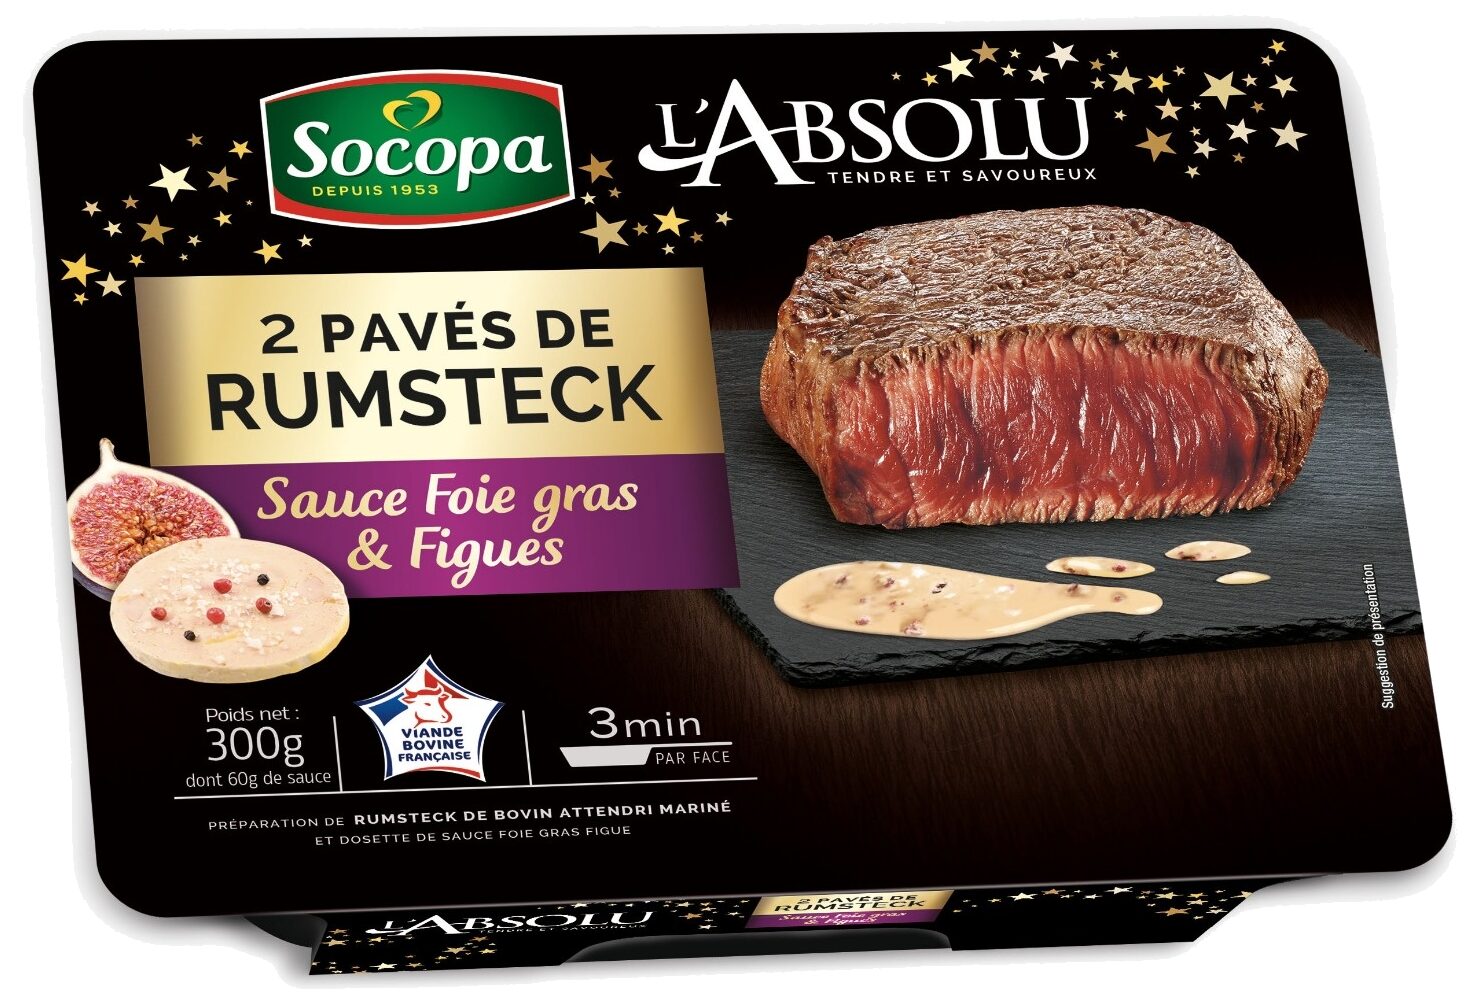 Pavé rumsteck sauce foie gras et figue - Product - fr